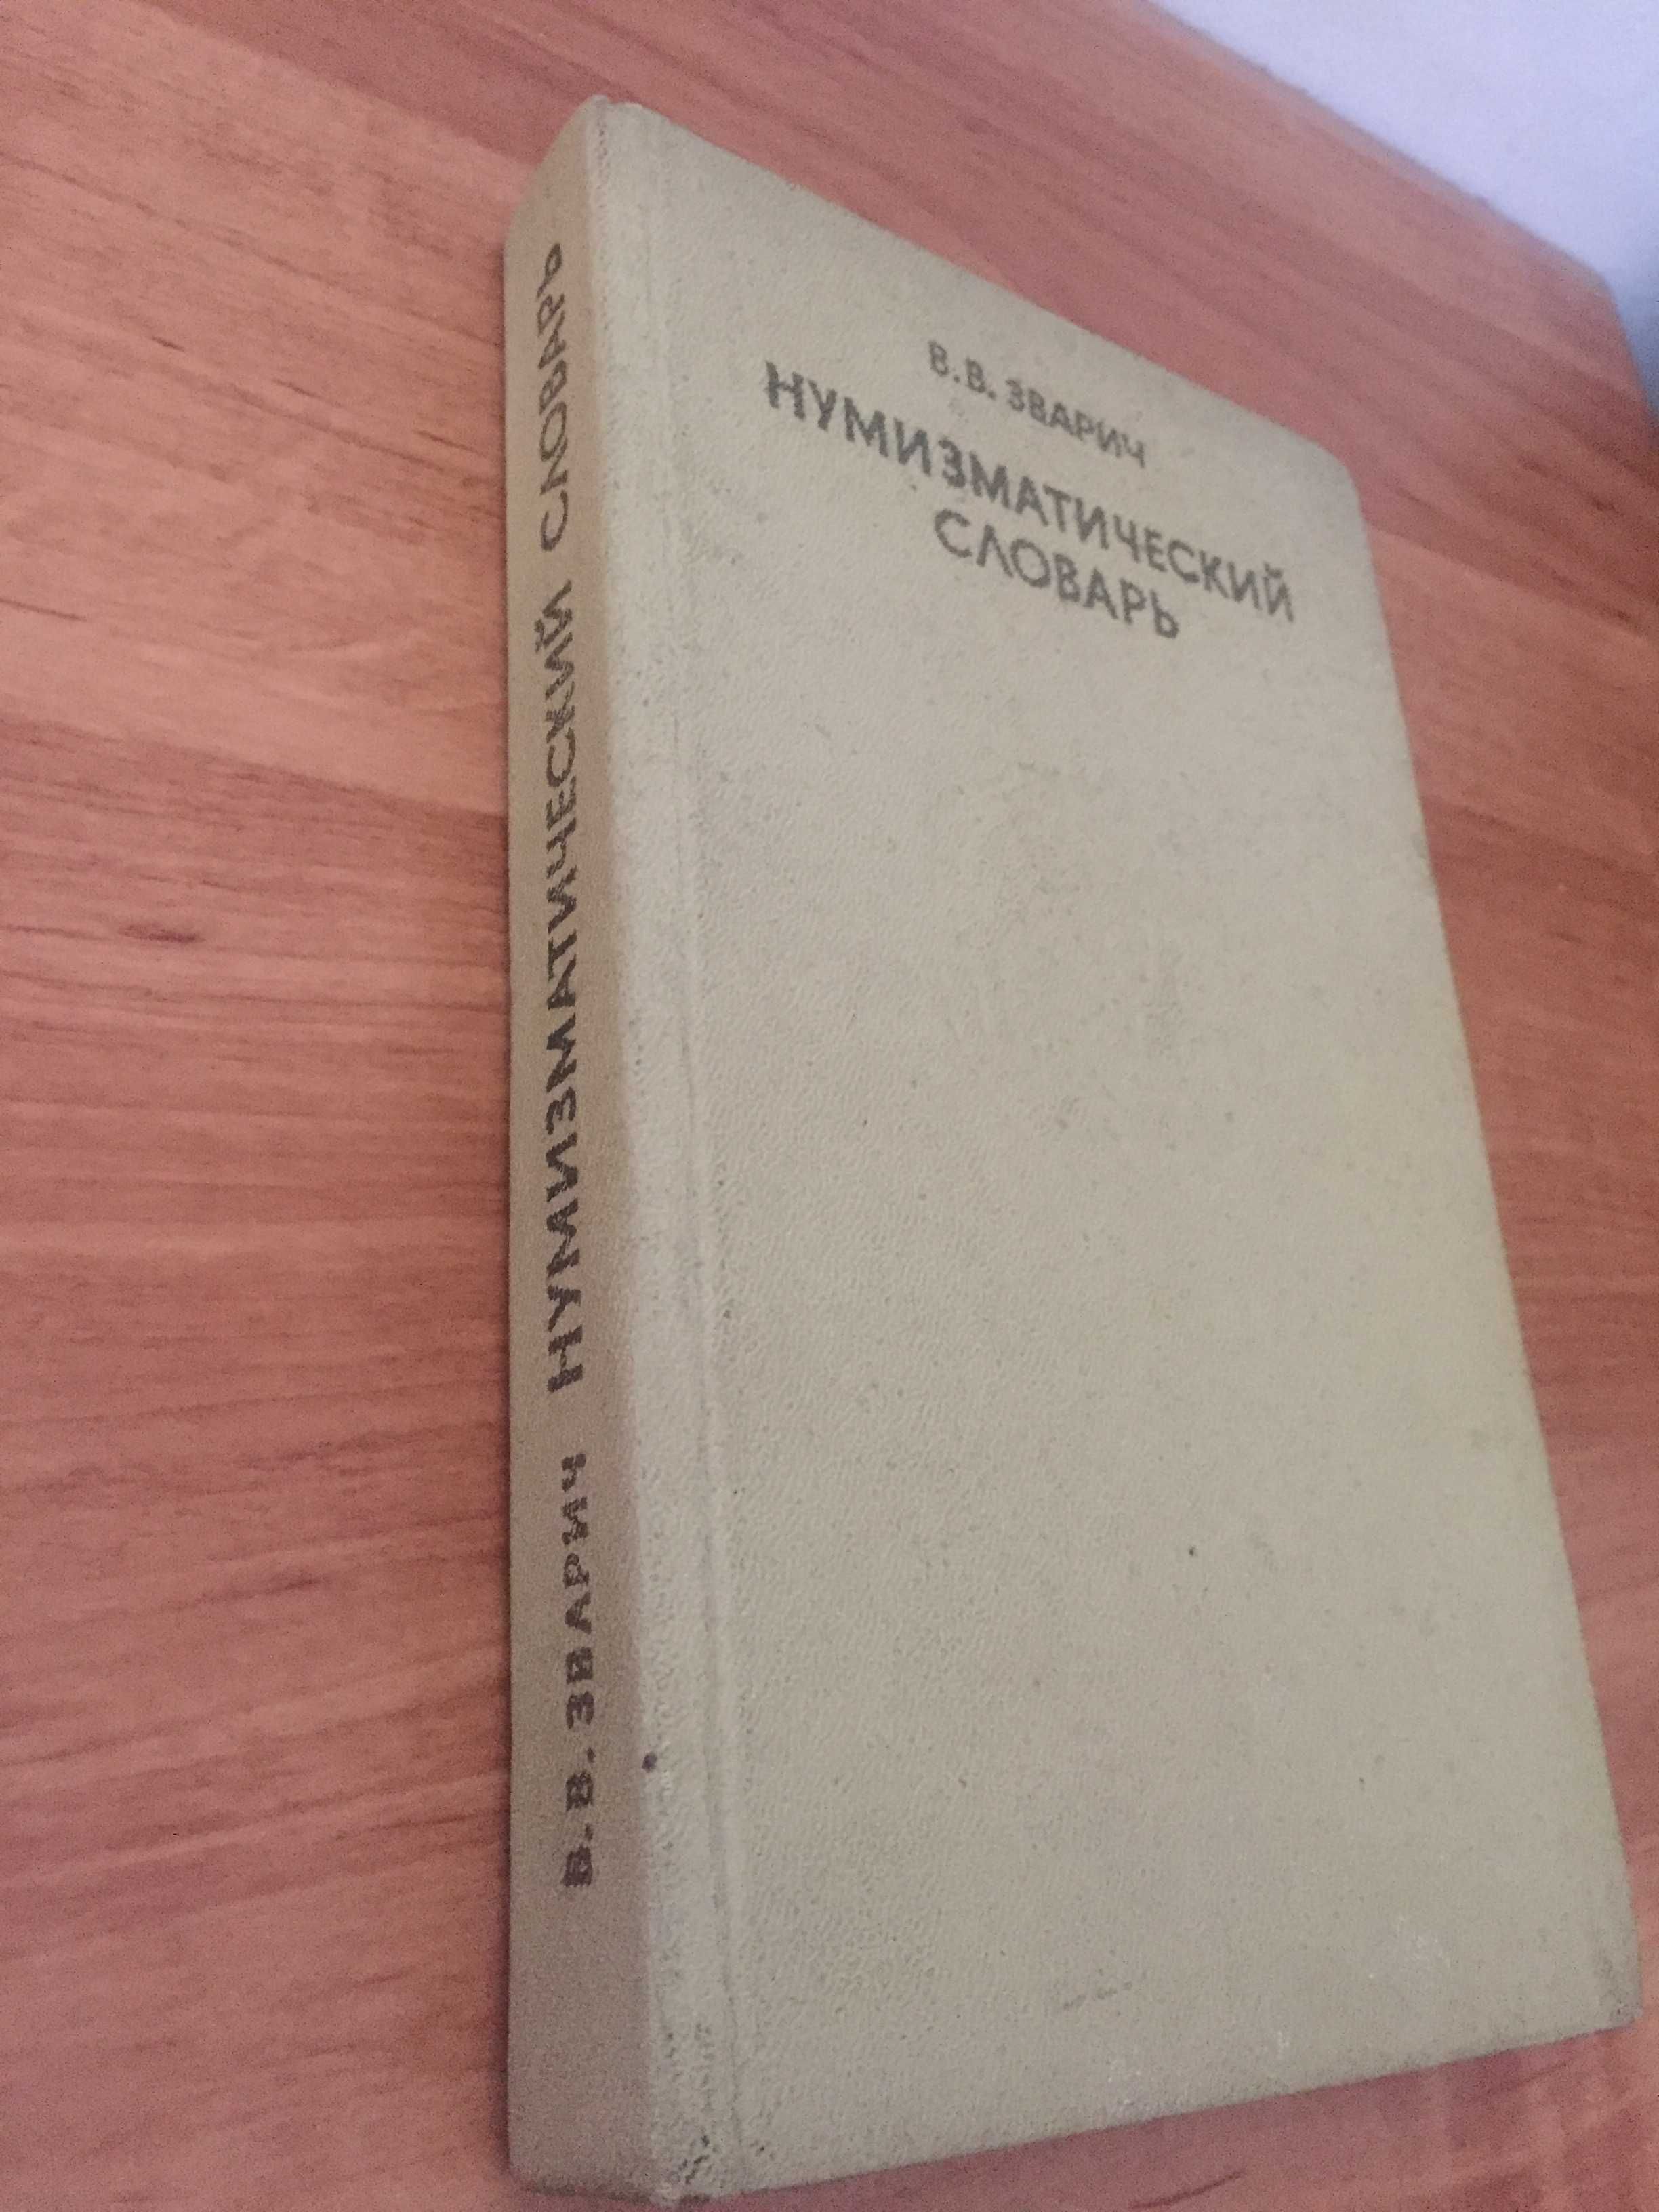 "Нумизматический словарь".В.В.Зварич 1978 г.